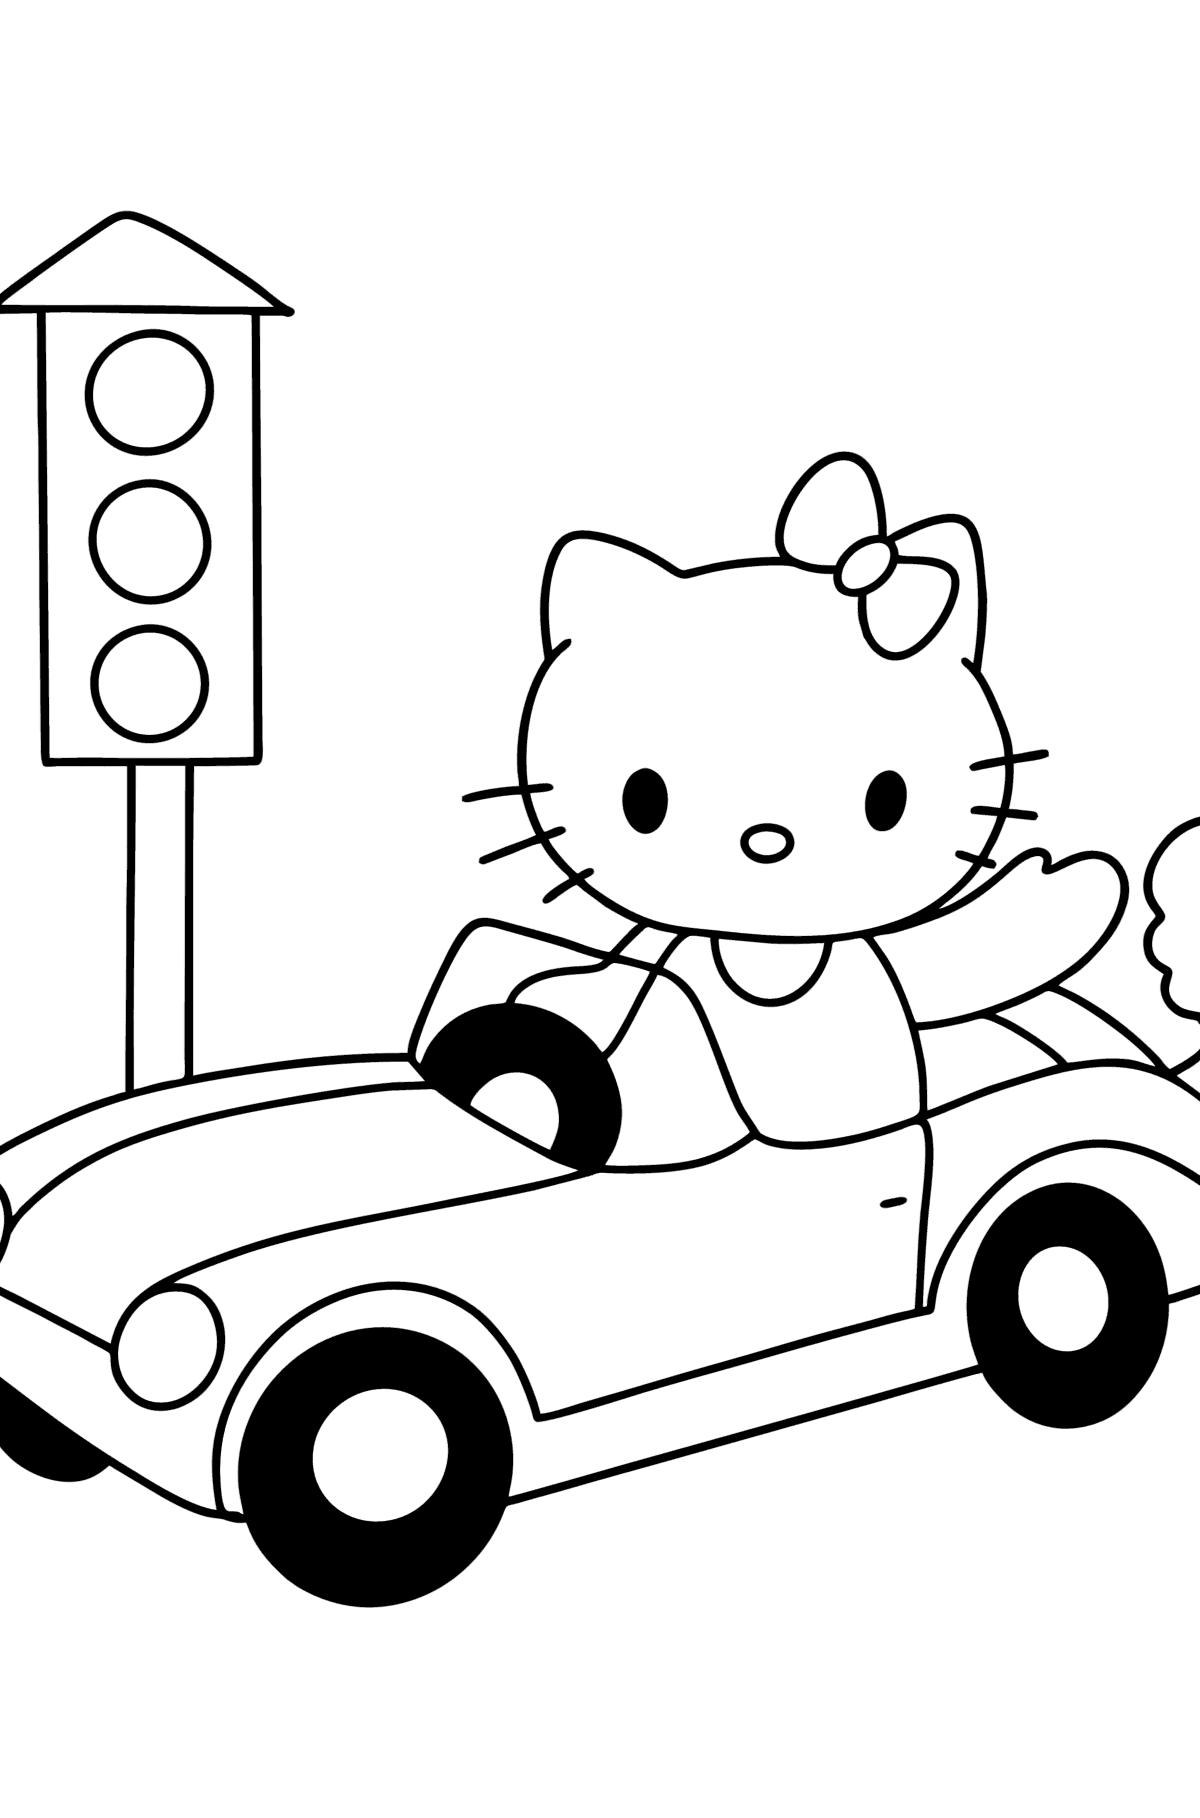 Boyama sayfası Hello Kitty ve araba - Boyamalar çocuklar için